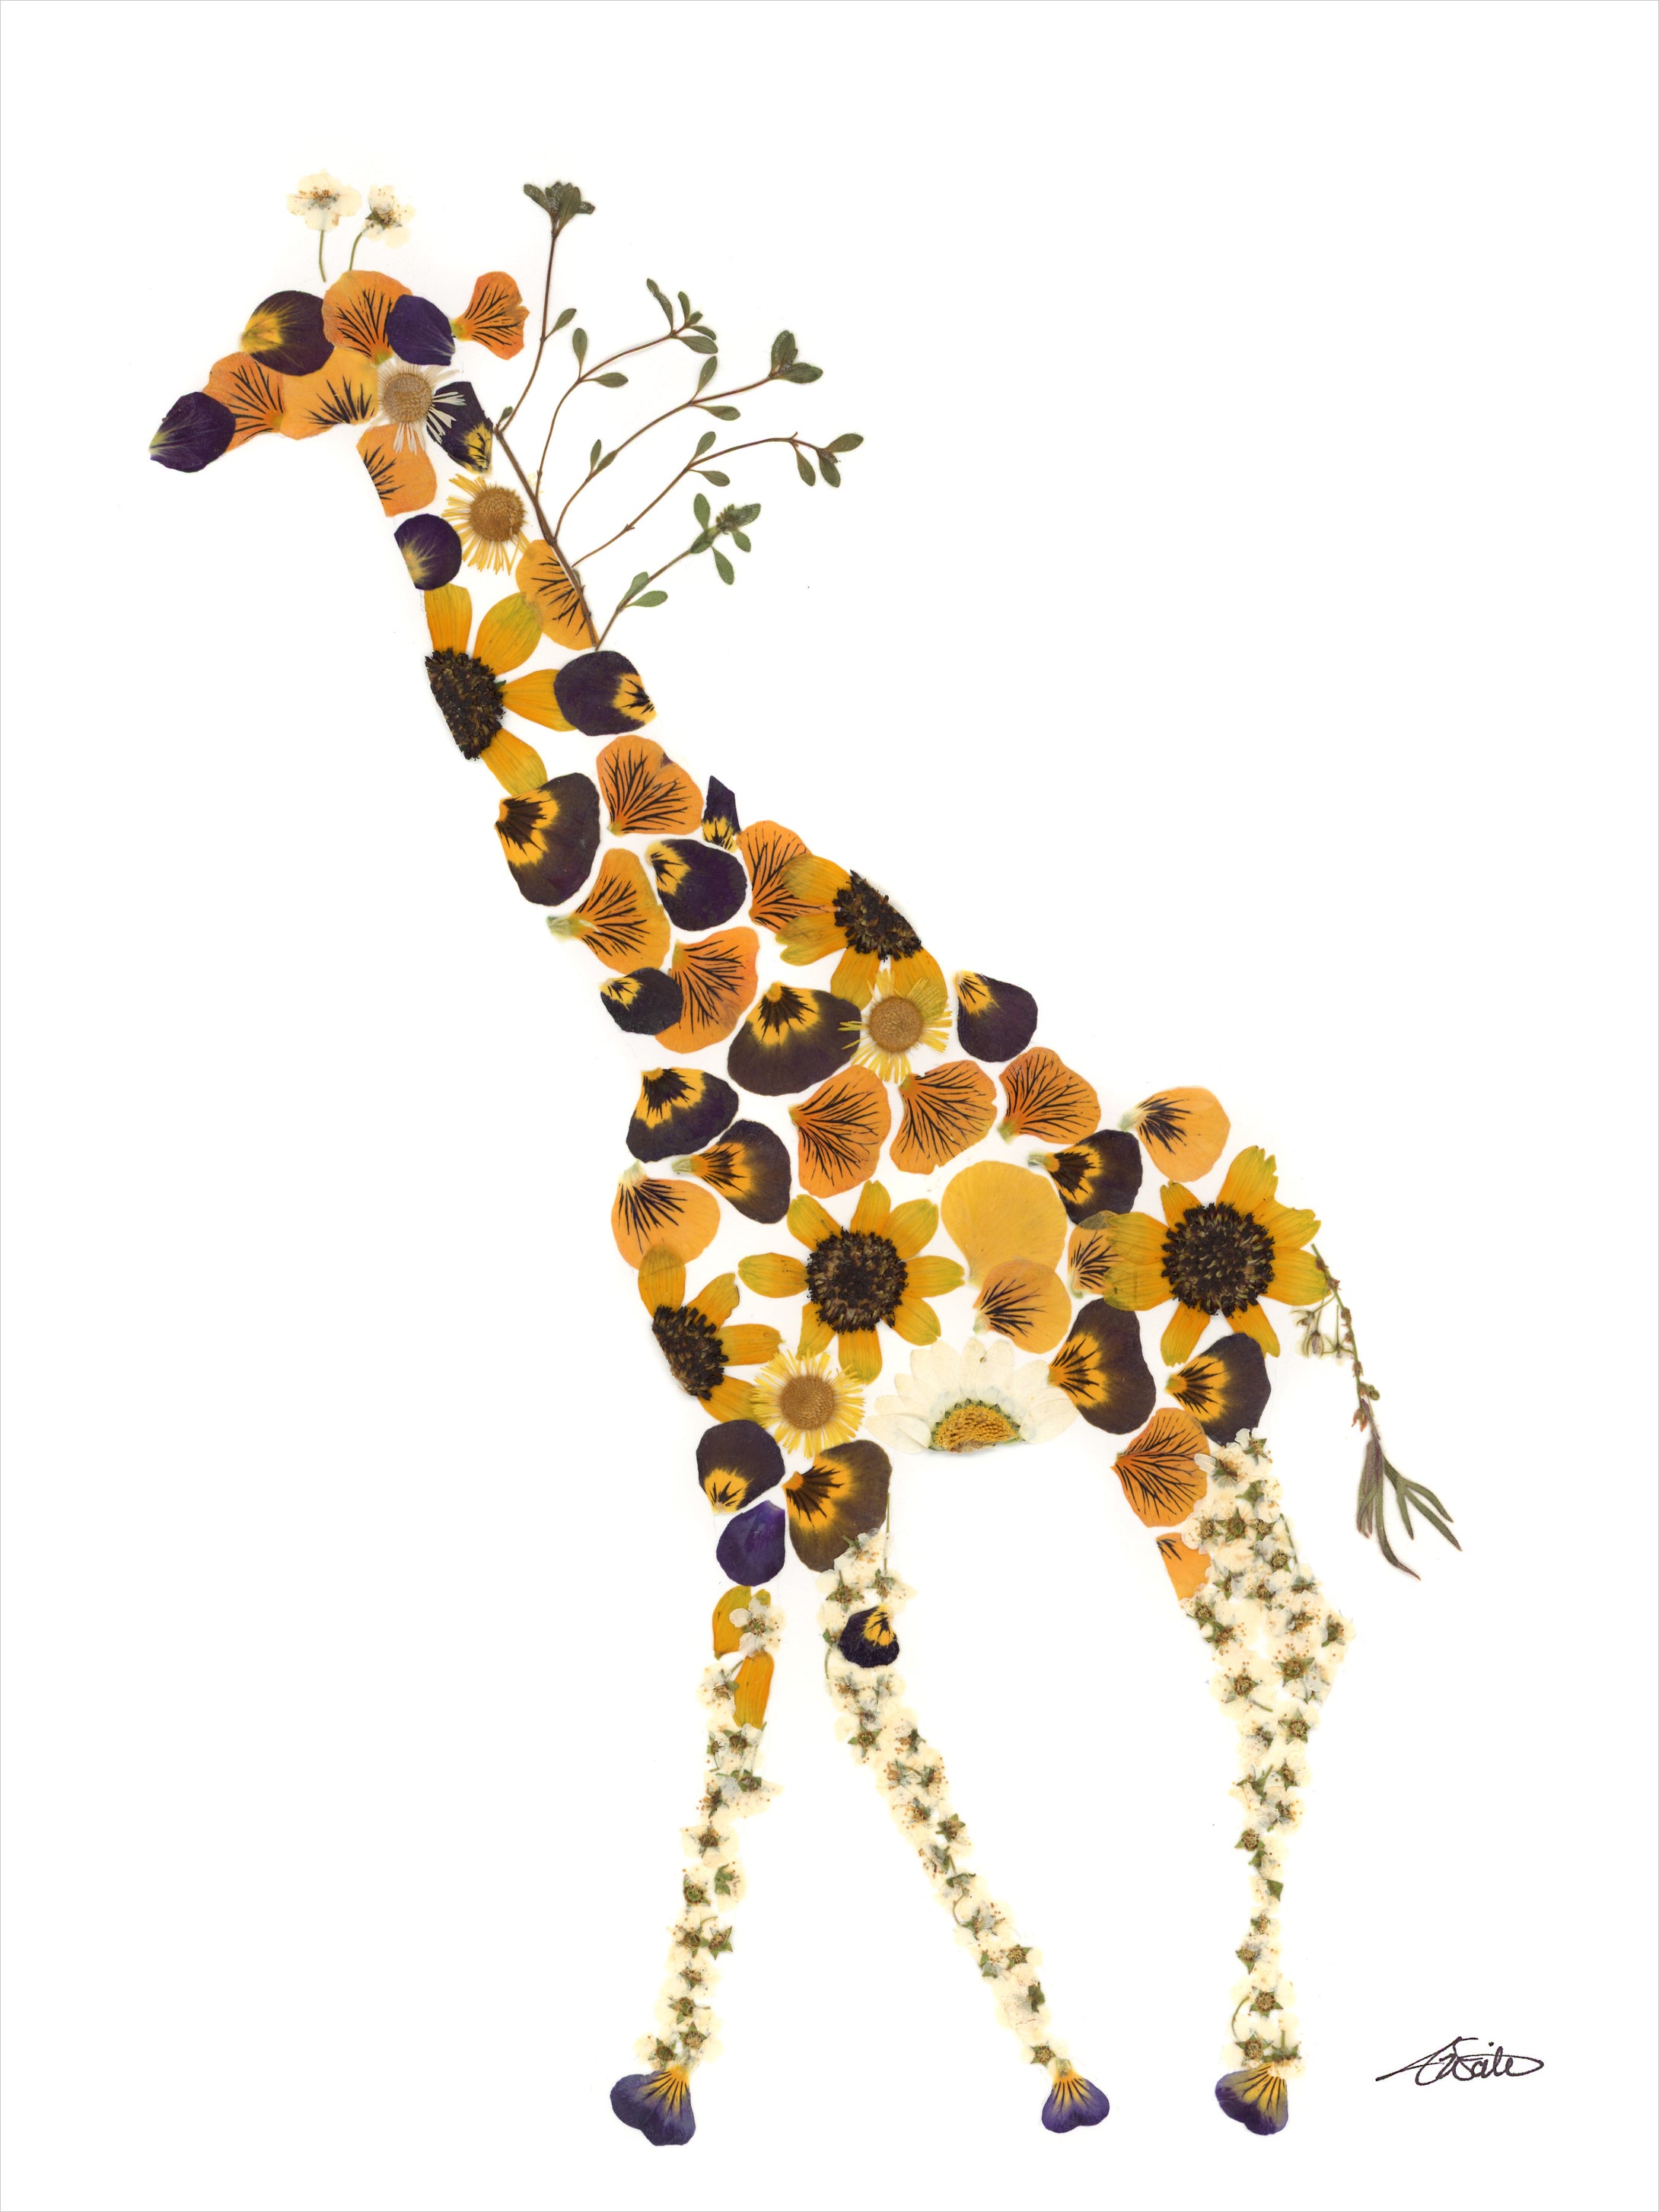 Roaming giraffe